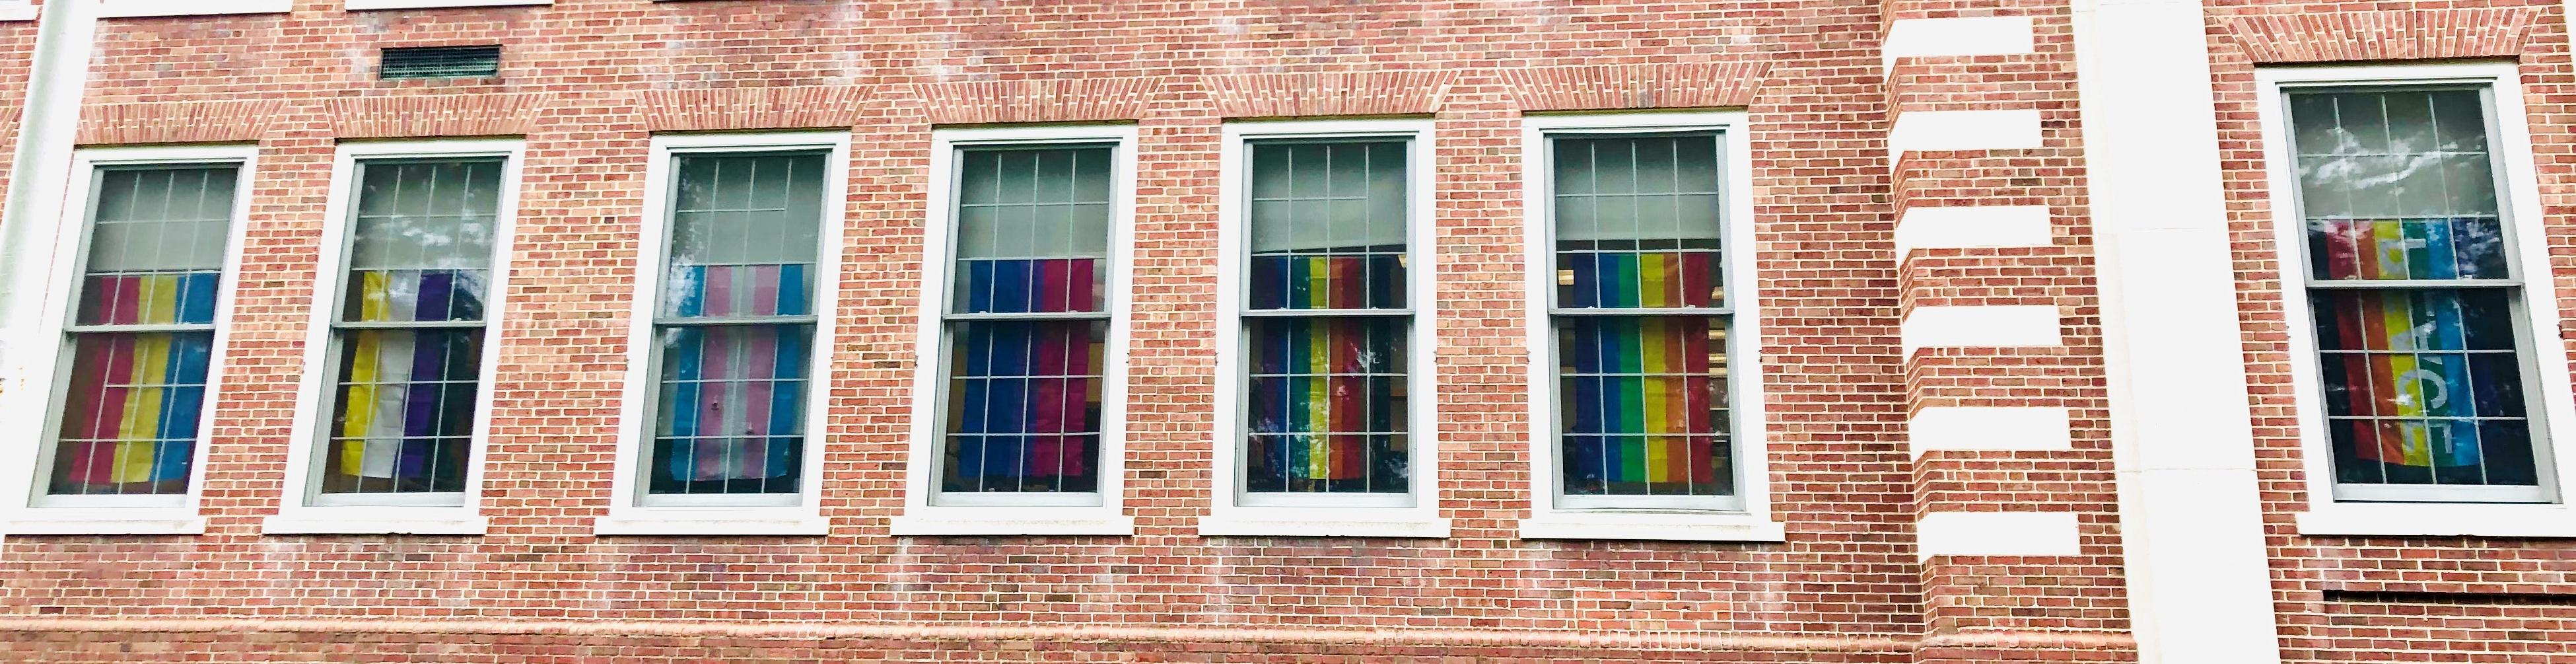 人力资源窗口中的lgbtq骄傲旗帜. 从左到右:彩虹平安, 彩虹, 费城的骄傲, 双性恋, 变性人, 非, 同理